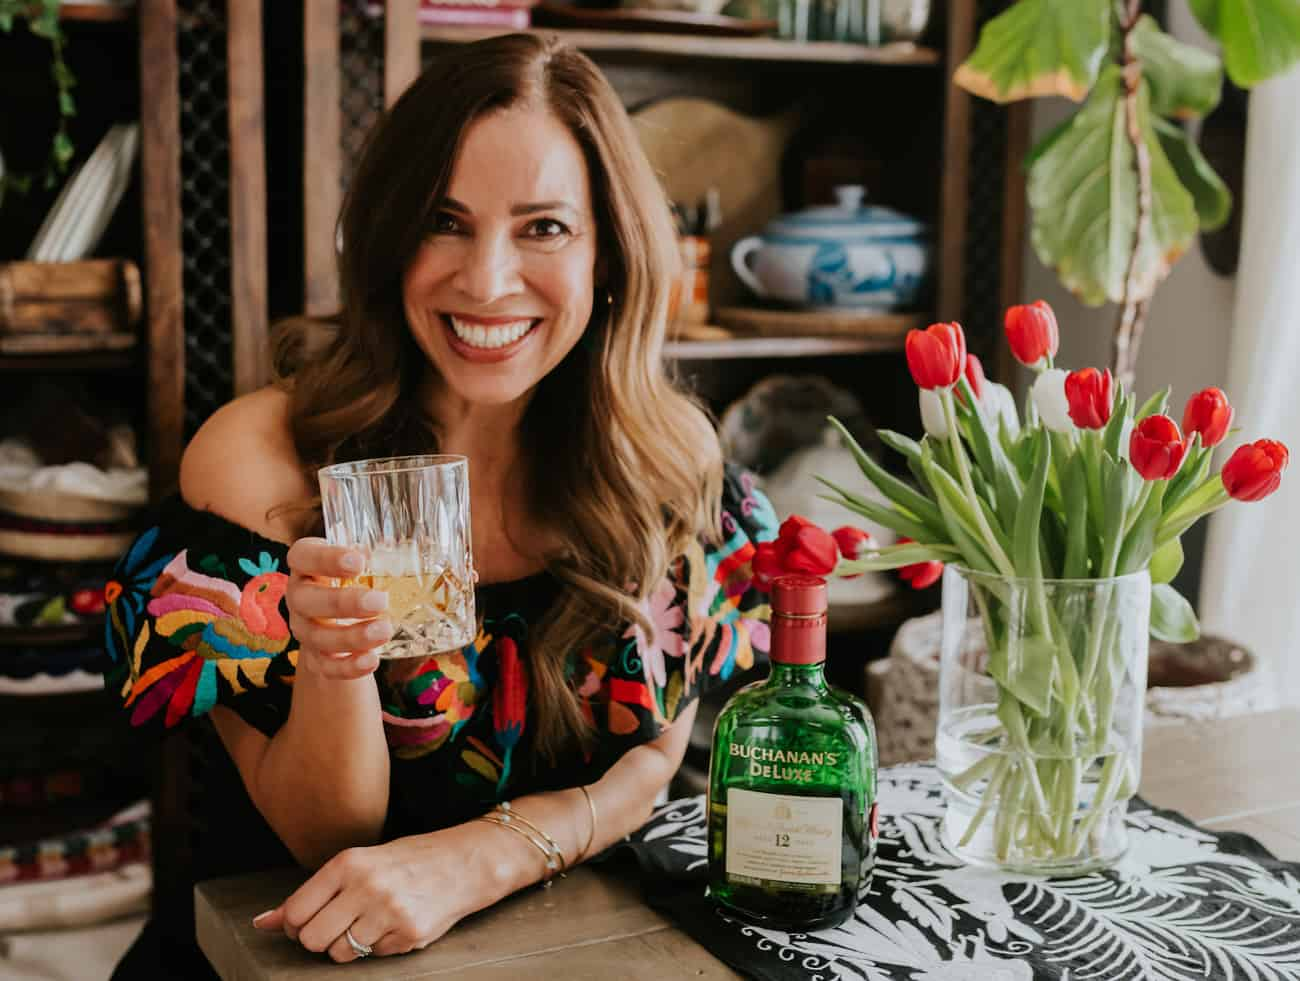 Yvette Marquez Latina Colorado blogger de comida segurando um copo de whisky com uma garrafa de Buchanan e um vaso de tulipas na lateral.